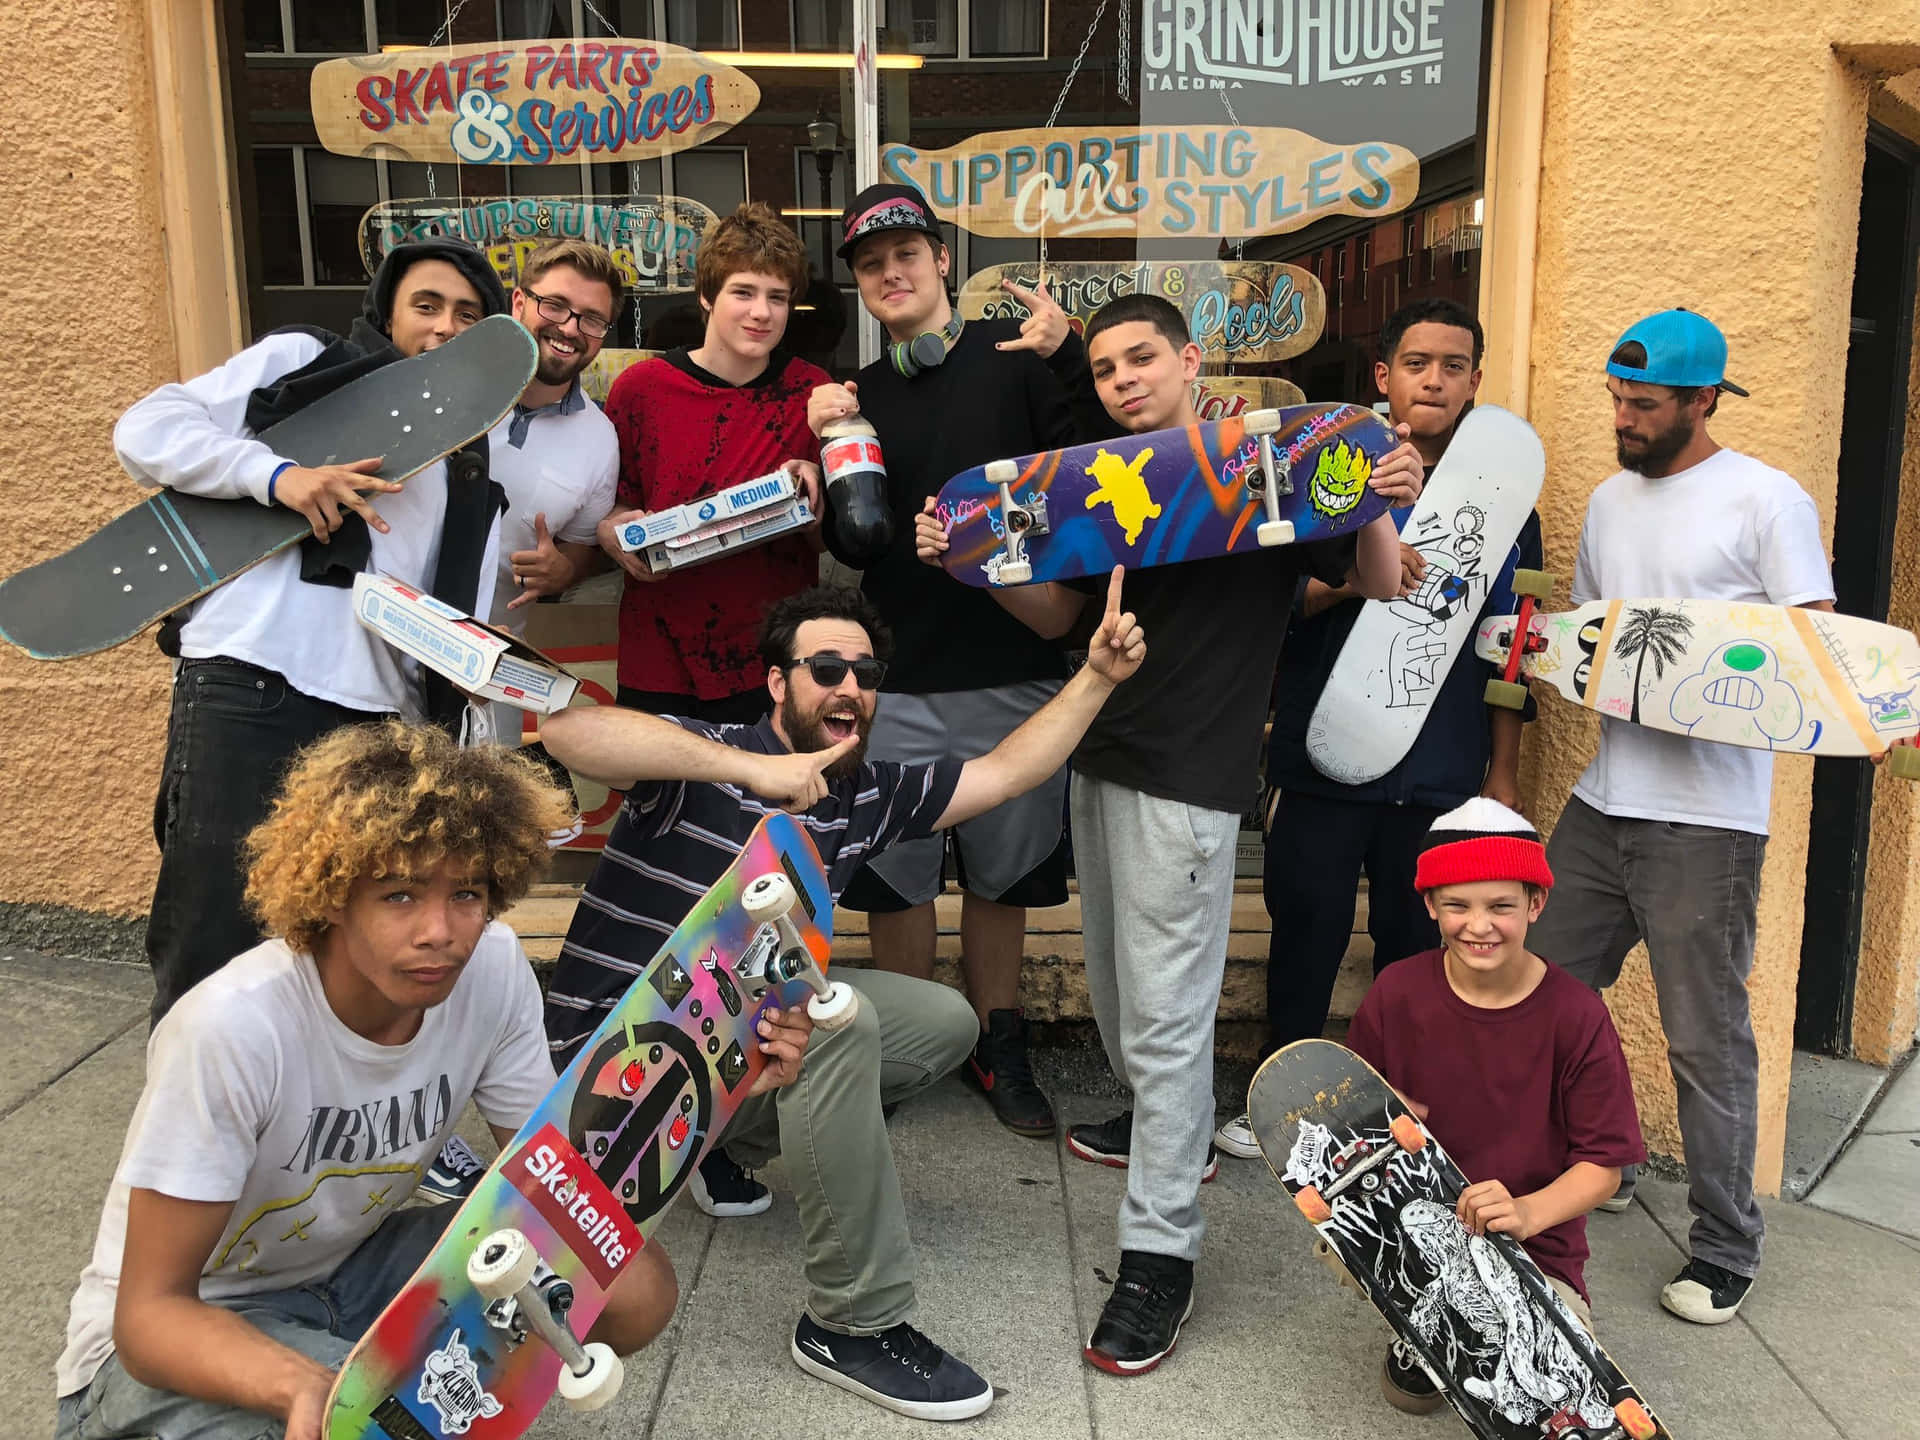 Einegruppe Von Menschen, Die Skateboards Halten.